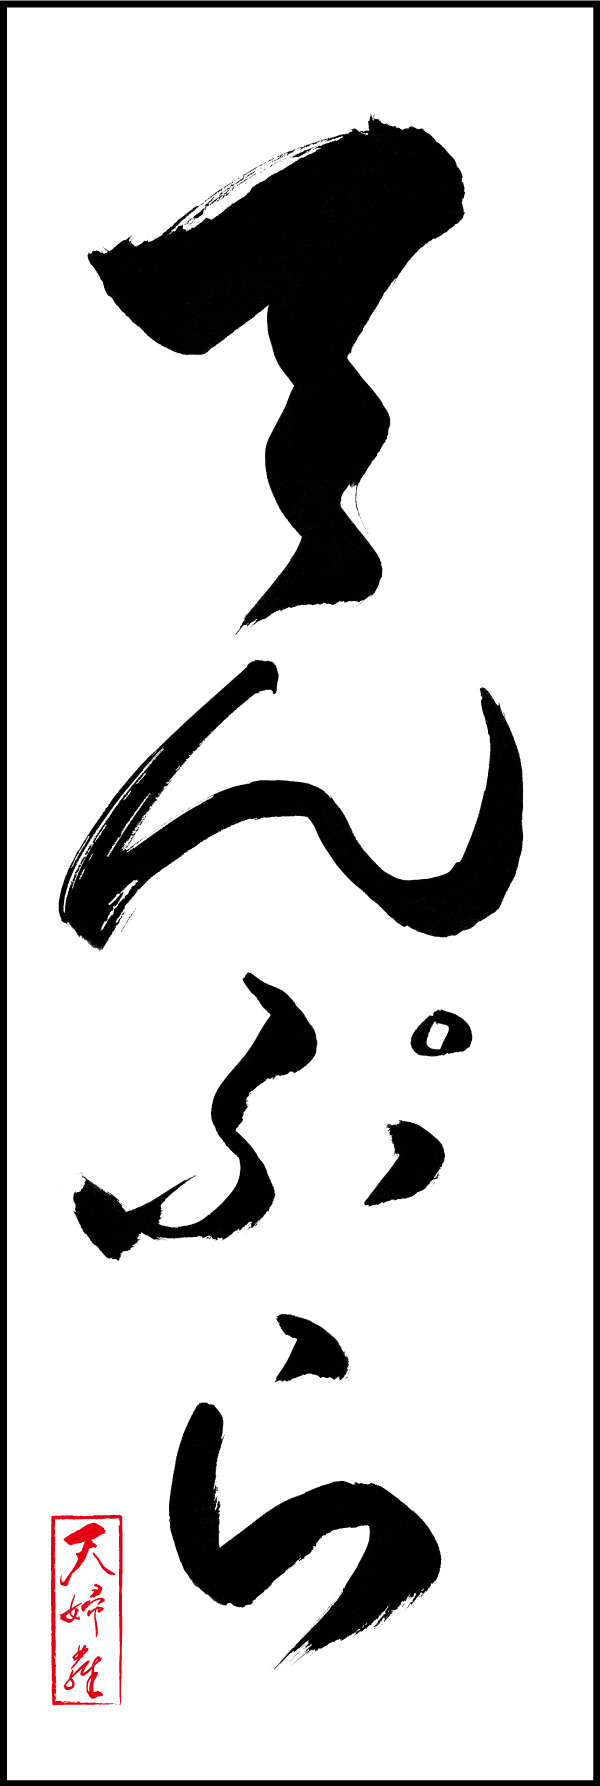 てんぷら 191_01 「てんぷら」ののぼりです。江戸文字職人 加藤木大介氏による、手書きの筆文字です。完全書き下ろし、唯一無二ののぼりは当店だけのオリジナル商品です。（M.N）